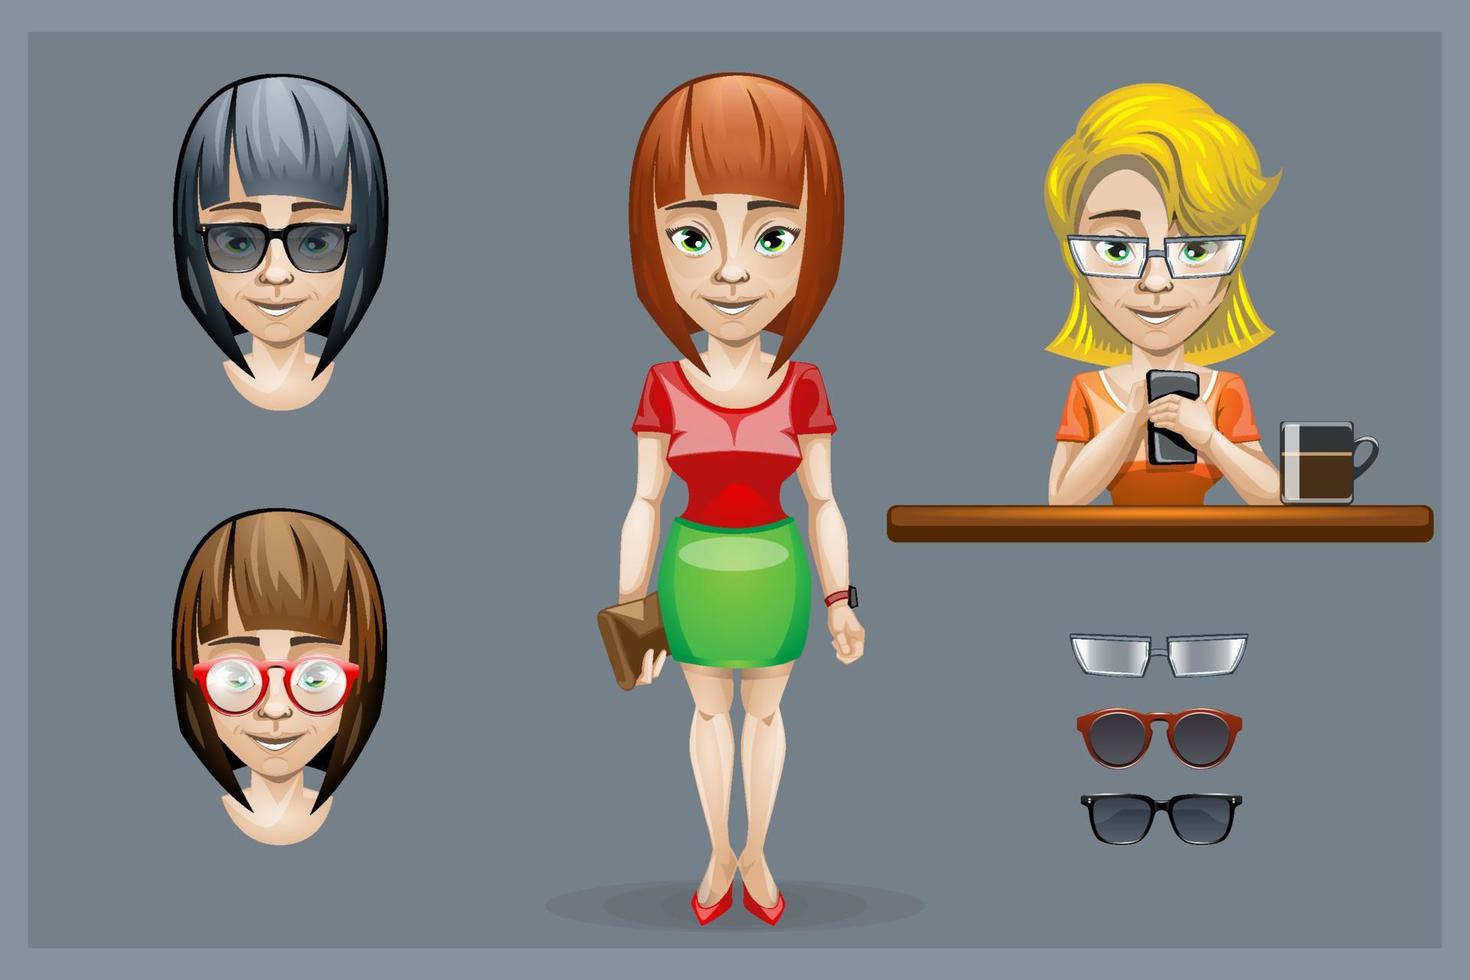 reeks van meisje karakter met verschillend kapsels en bril. vector